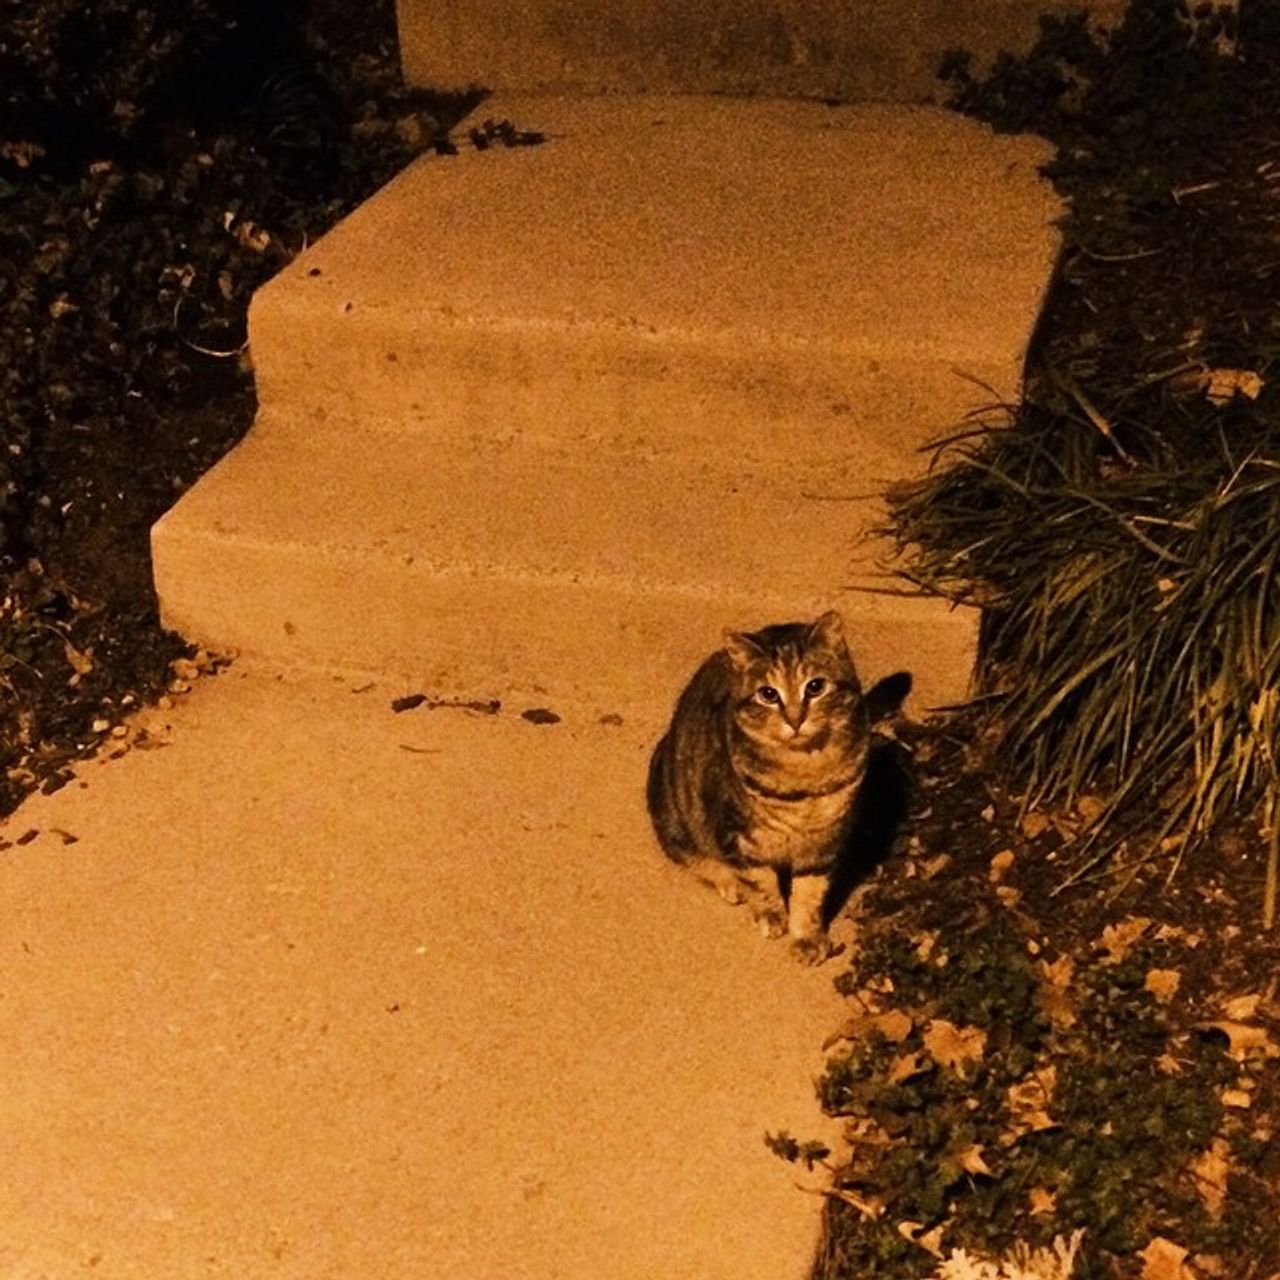 a cat in the night, a night cat